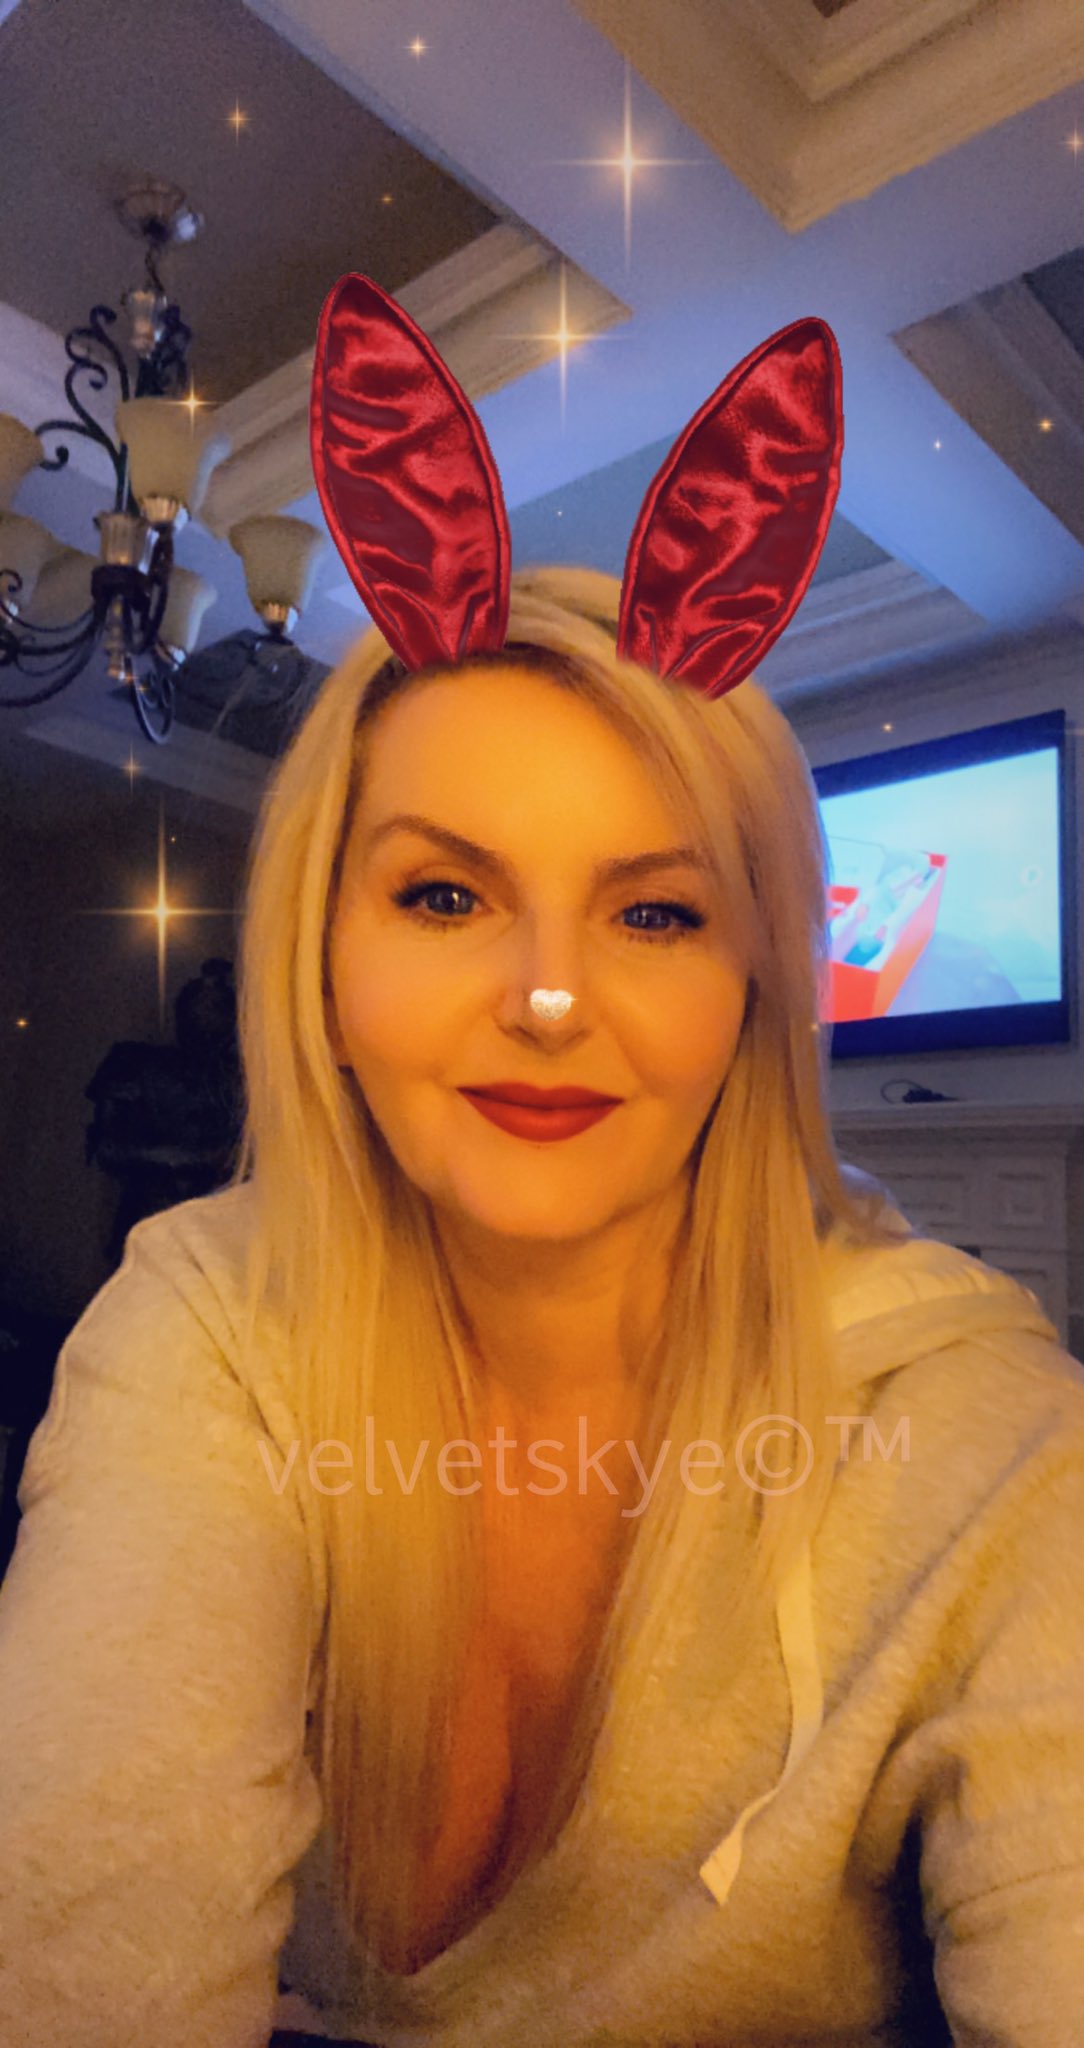 Tw Pornstars Velvet Skye™ Twitter Getting Into The Christmas Spirit Thanks Snapchat 3 03